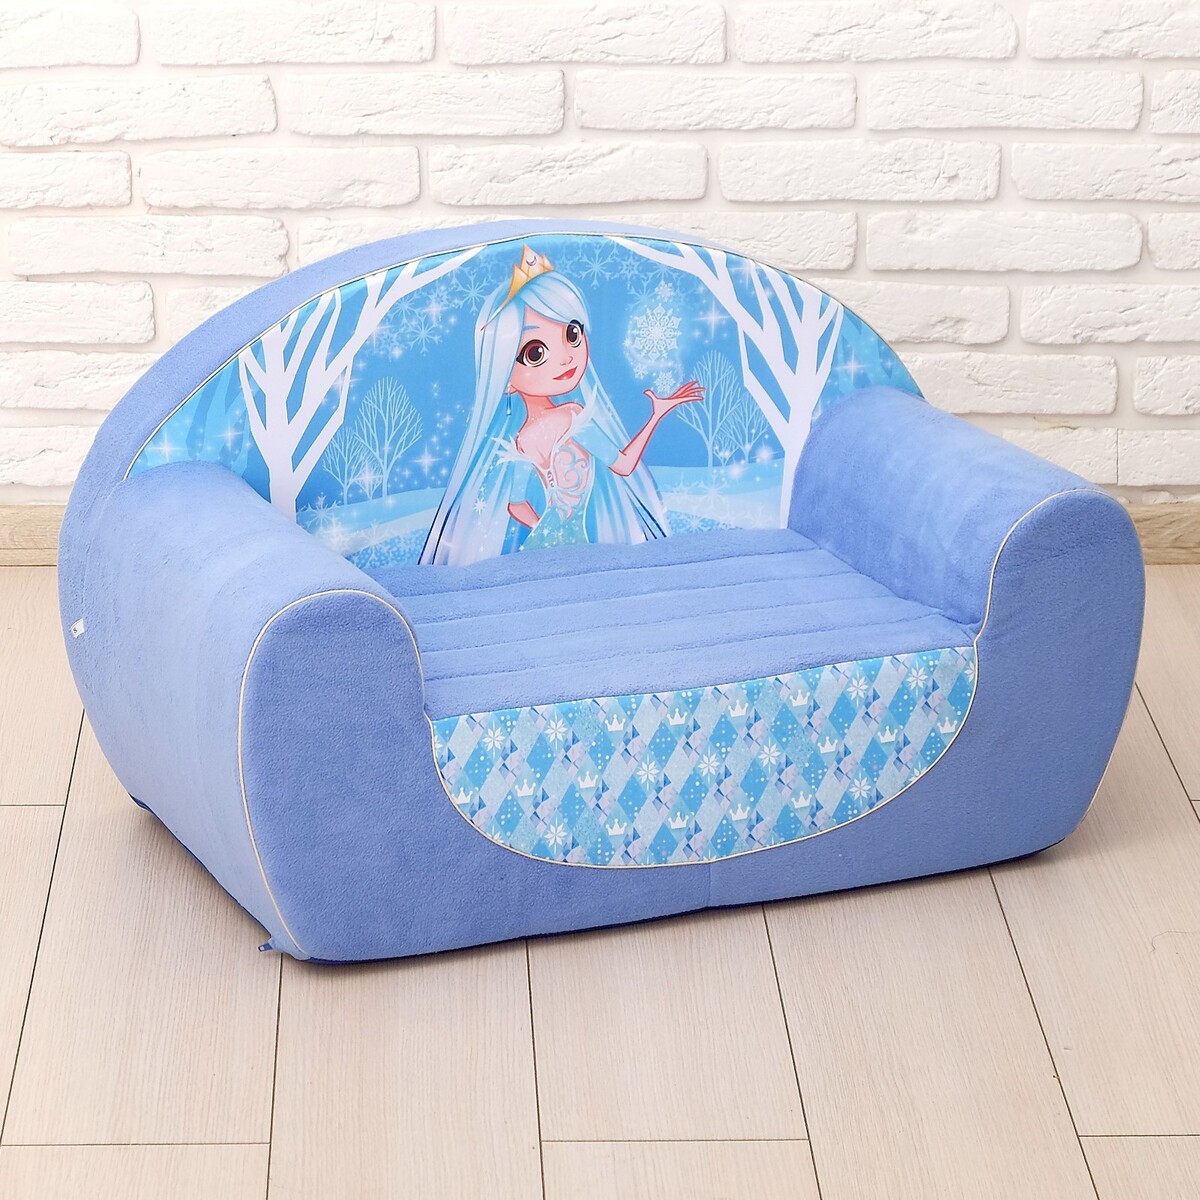 Мягкая игрушка-диван kidkraft набор садовой мебели для детей секционный диван пуф стол зонт 20305 ke